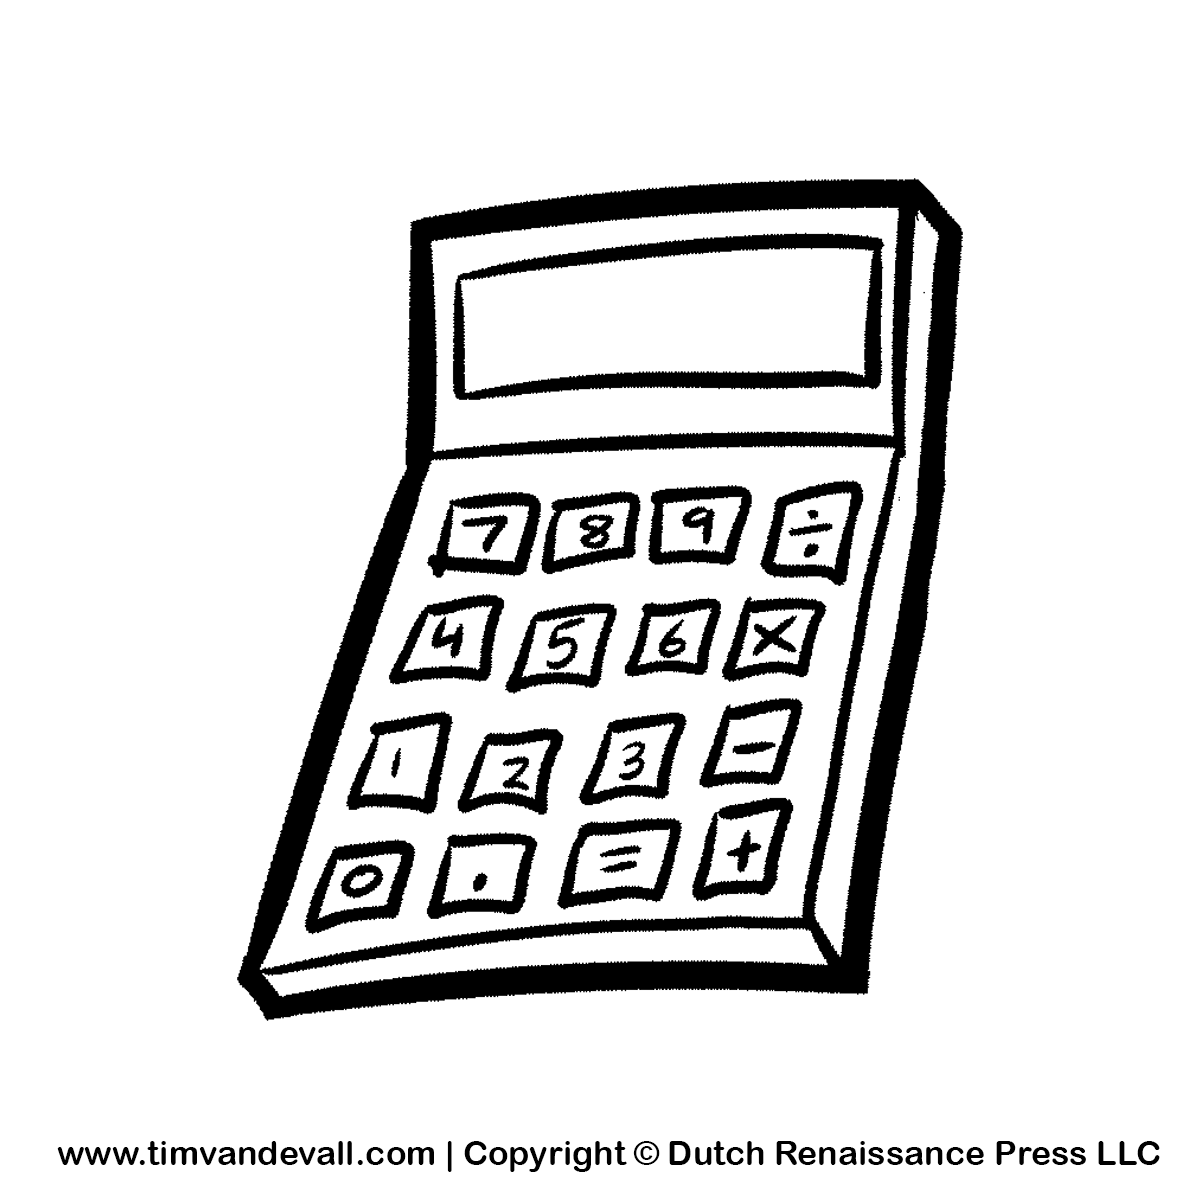 1200 60 Kb Png Calculator Clip Art 1024 X 1024 469 Kb Jpeg Calculator